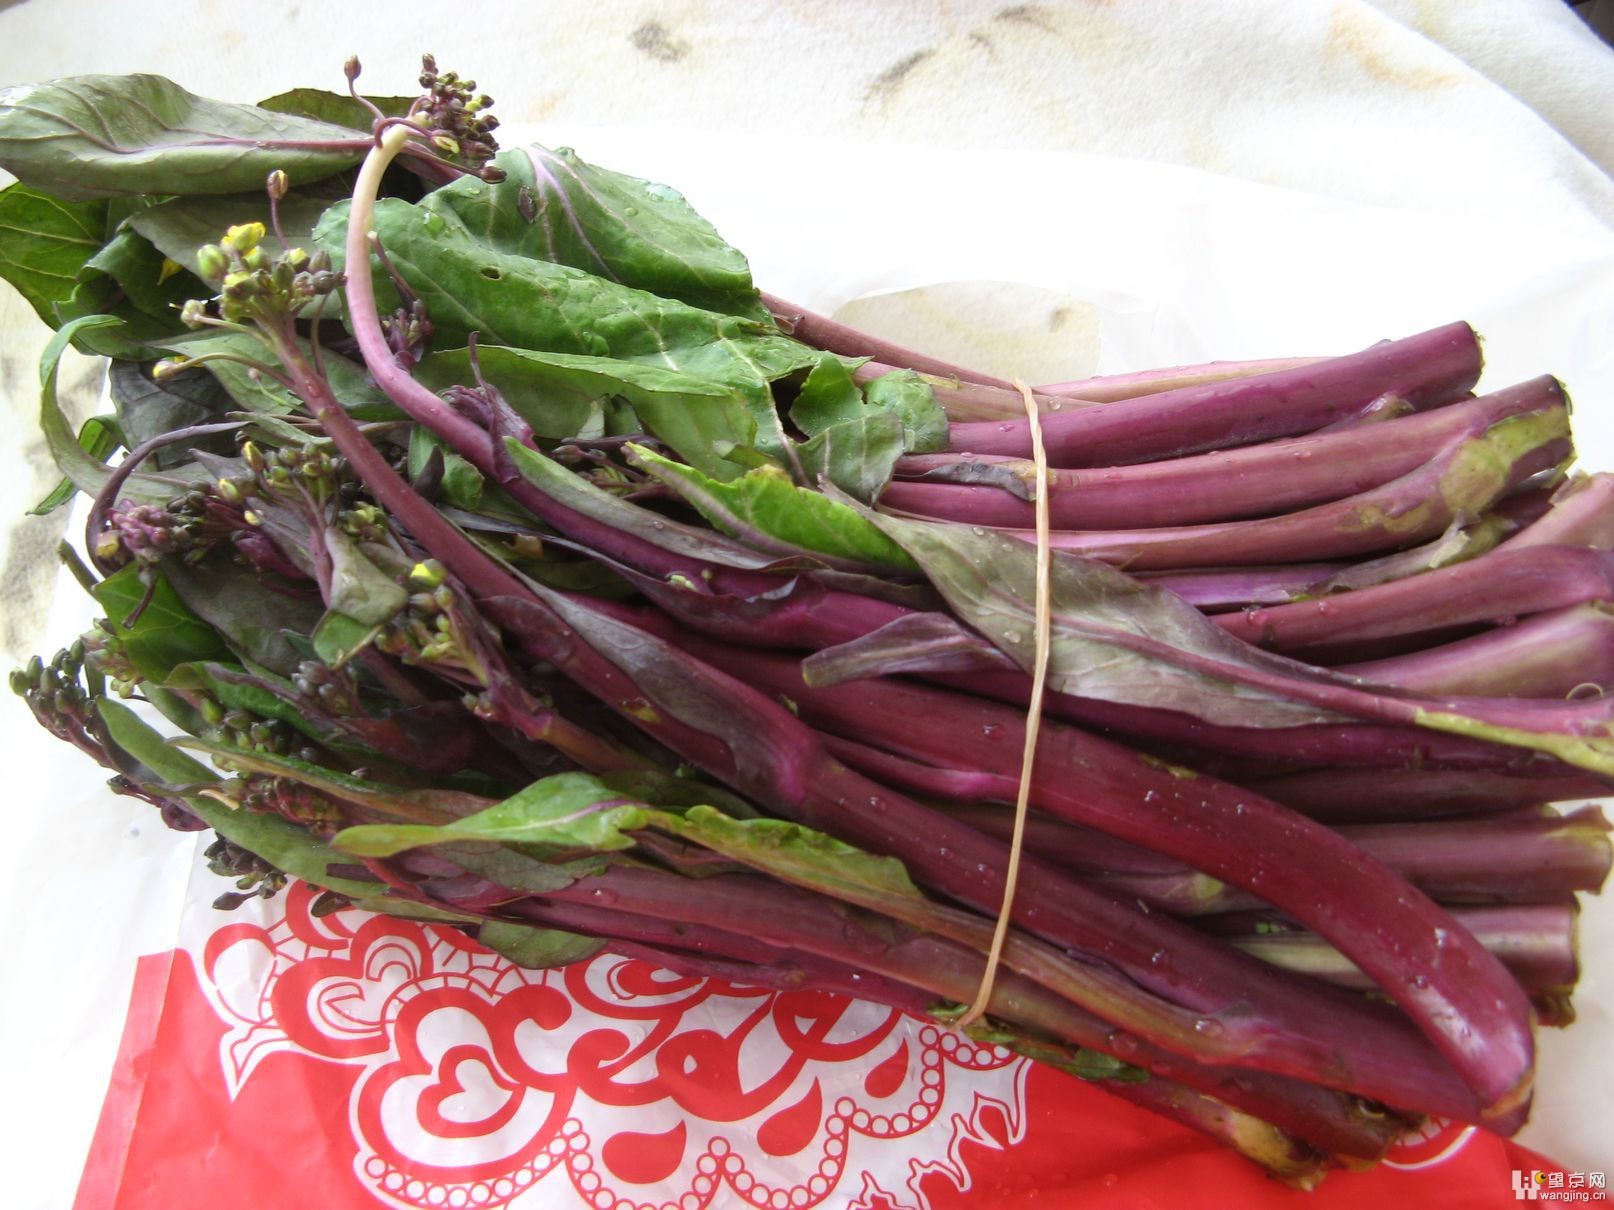 紫色青江 | 紫青江跟紫后小白菜最大的差異: 『紫青江葉片有毛而紫后沒有』 | 幸福種子 | Flickr